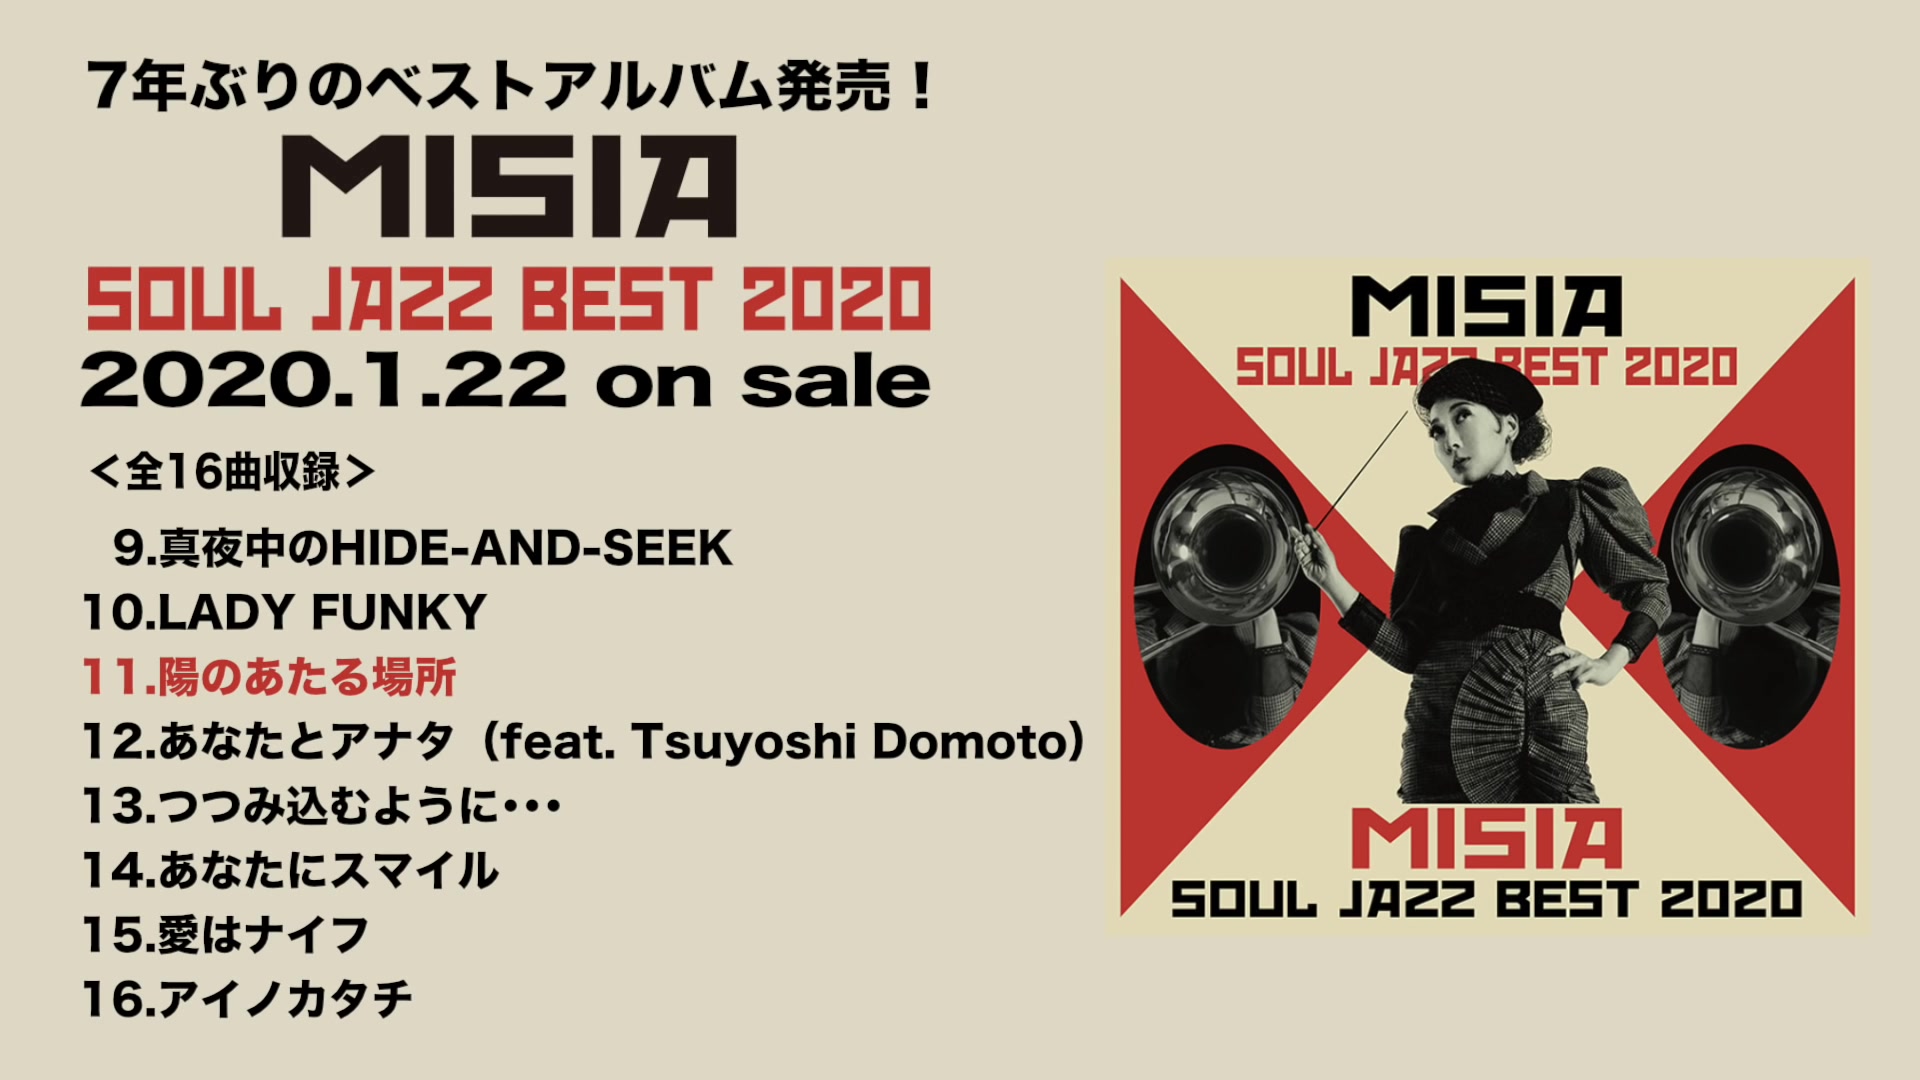 ファッションの misia LP レコード soul jazz best 2020 bird